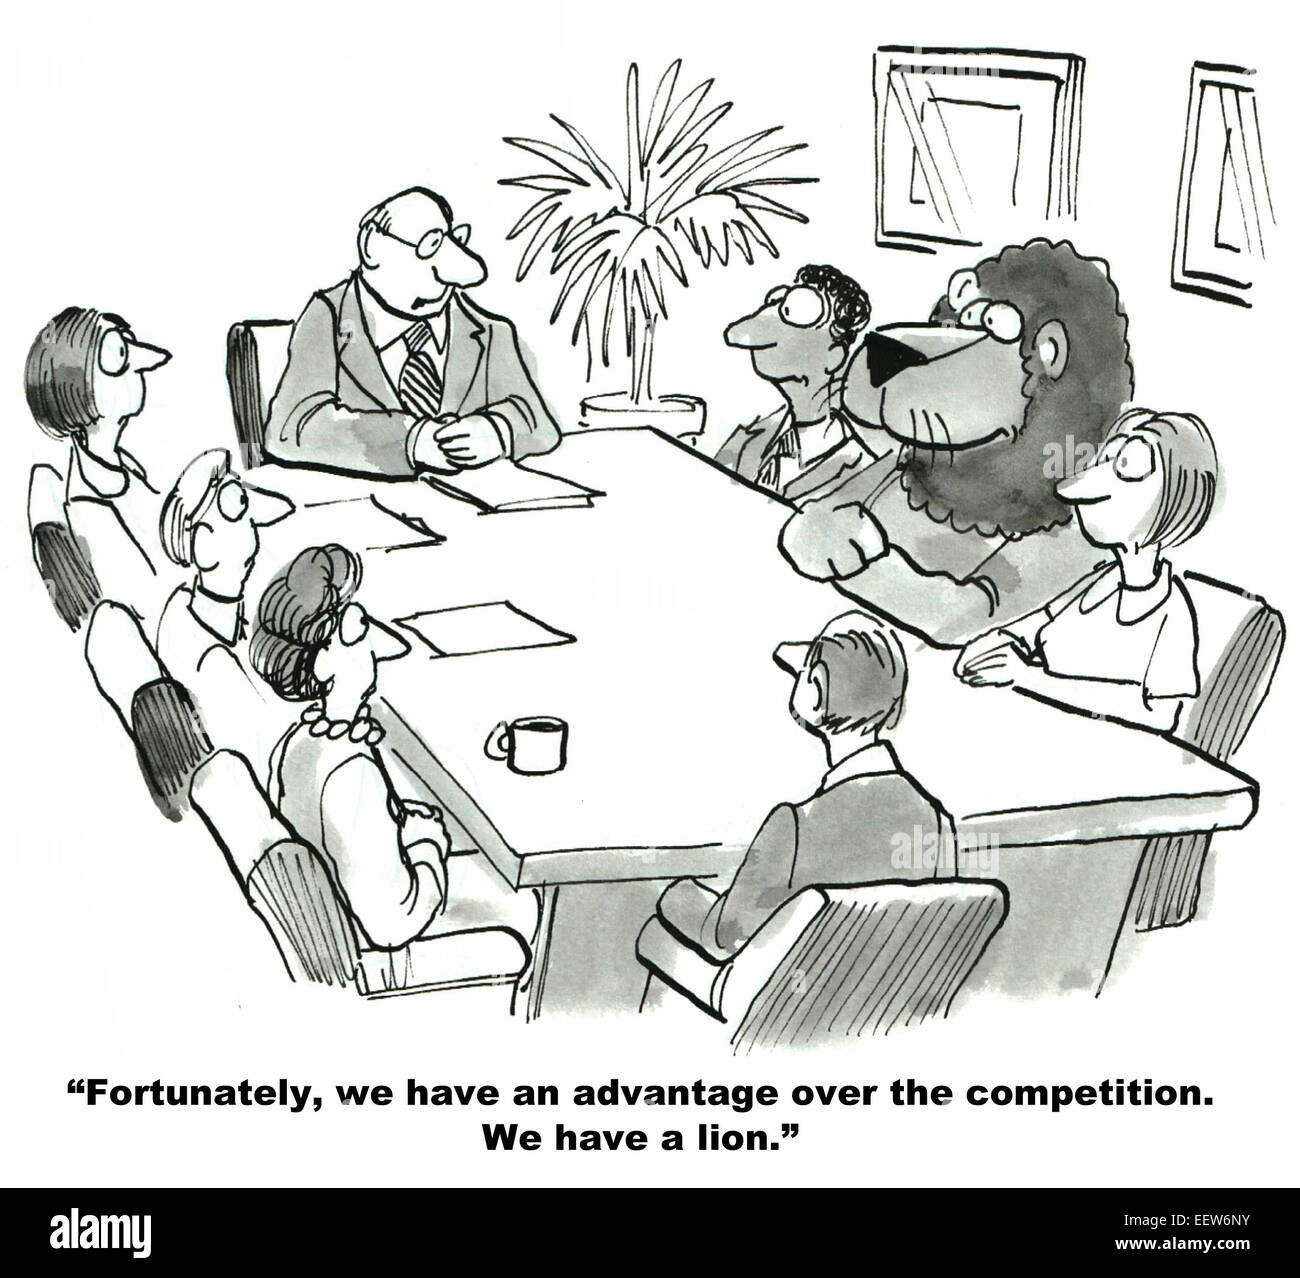 Karikatur von einem Business-Meeting und der Führer sagt, sie haben einen Wettbewerbsvorteil zu verschaffen, haben sie ein Löwe. Stockfoto